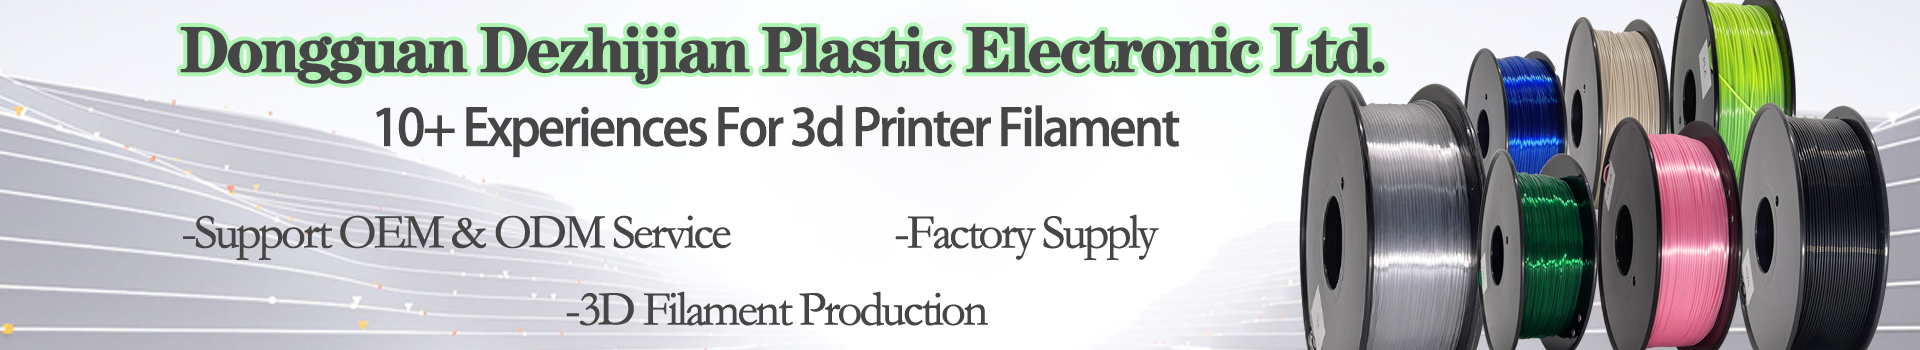 PinRui hög kvalitet 1kg 3d PLA + Filament PLA Pro 1.75mm Filament